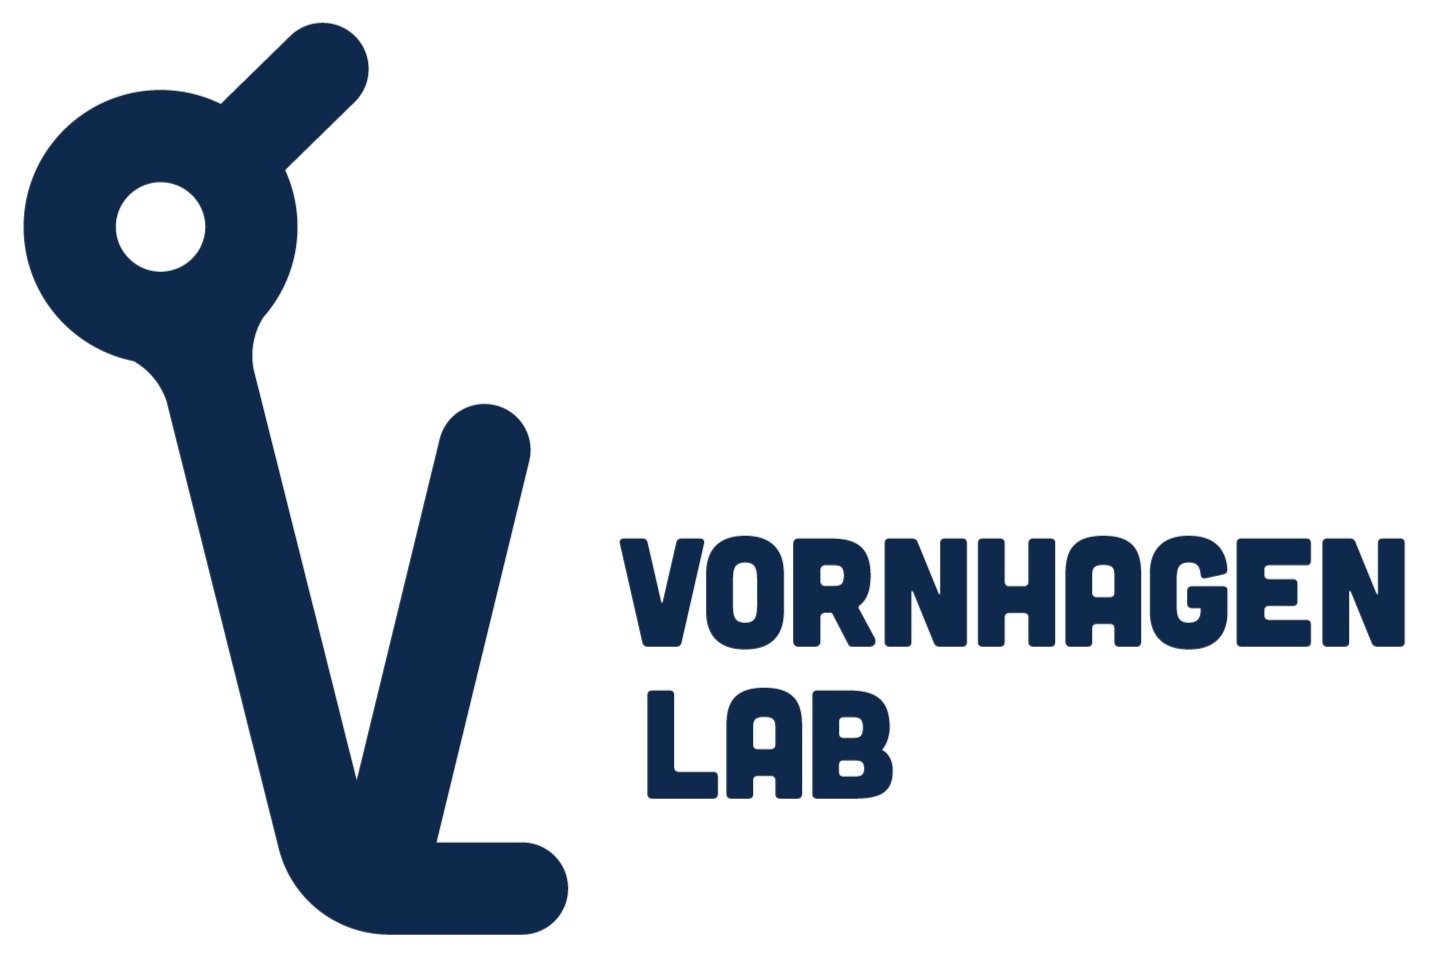 The Vornhagen Lab